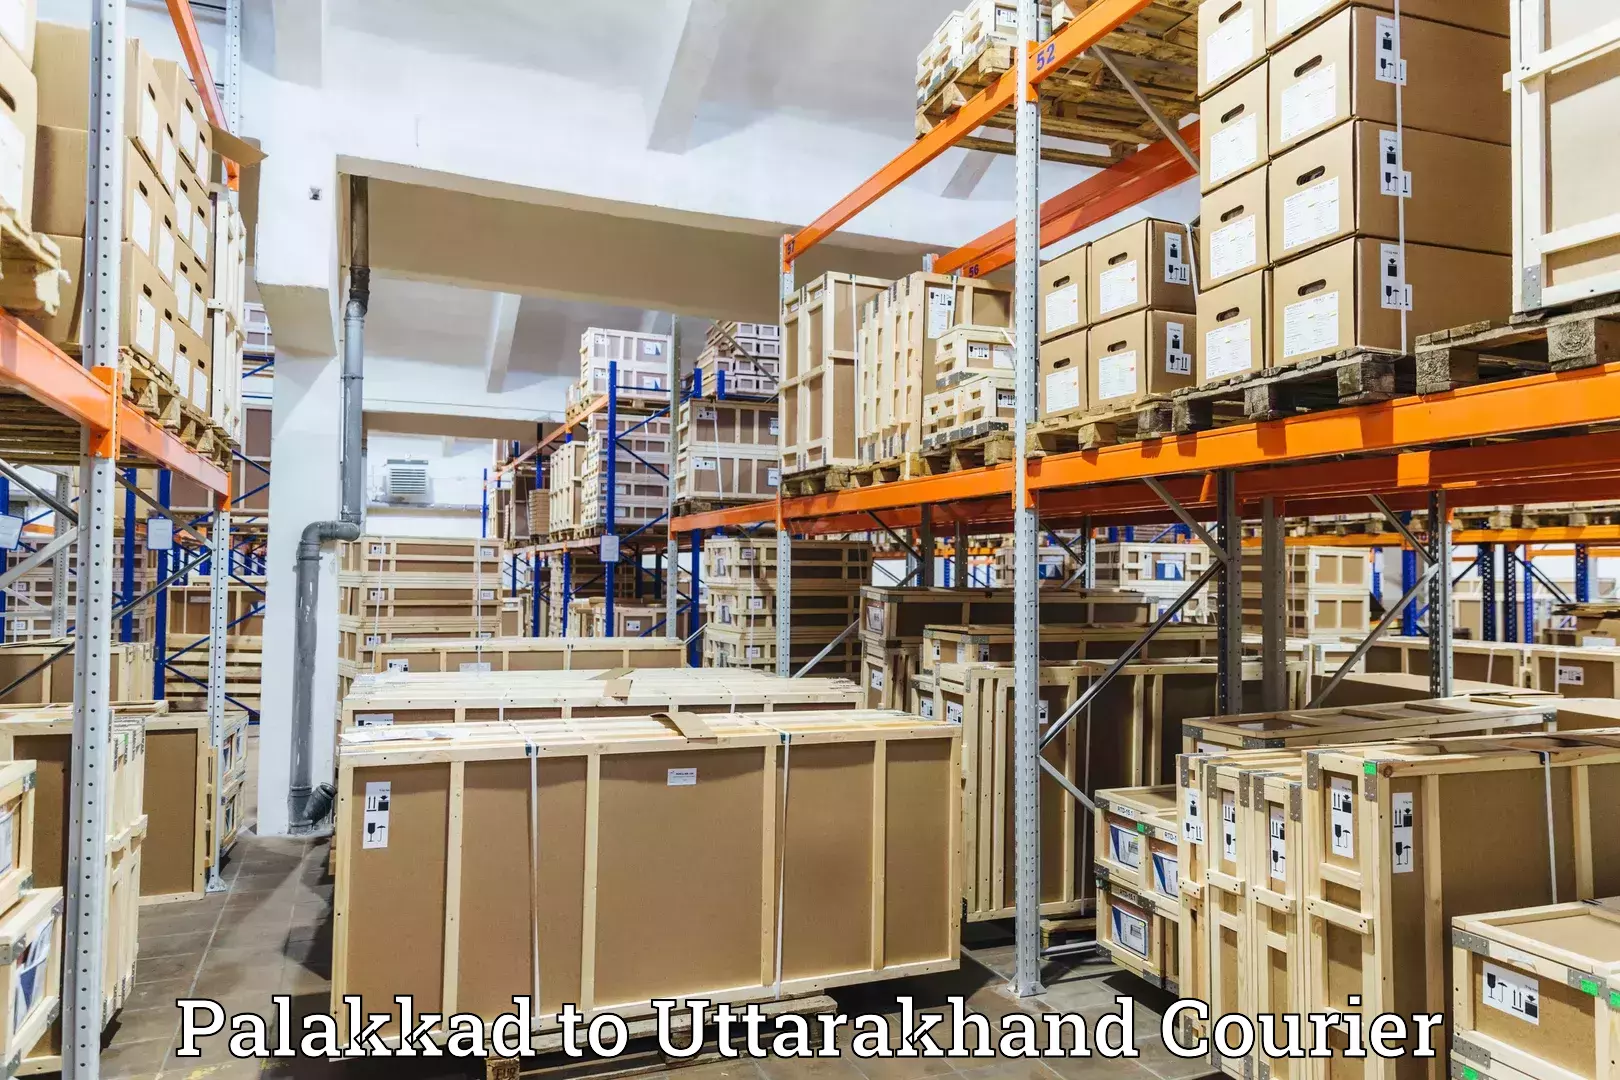 Advanced shipping technology Palakkad to Rishikesh